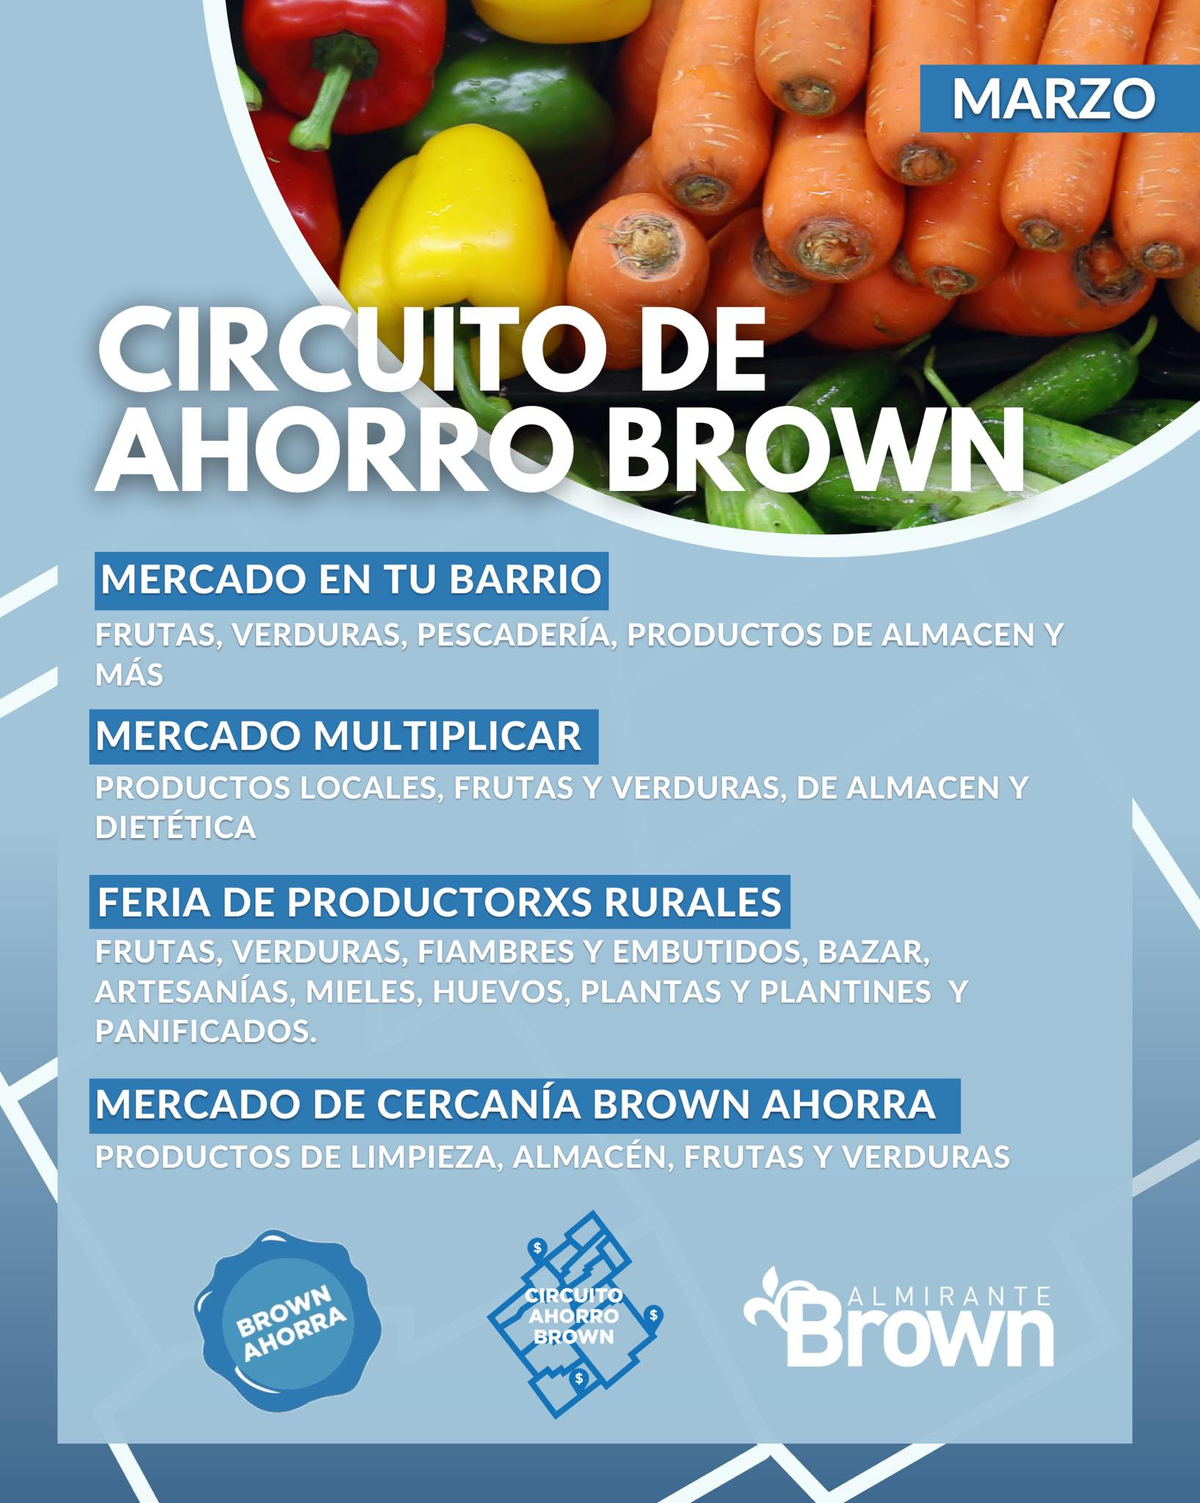 Los mercados del Circuito de Ahorro Brown se distribuir&aacute;n por la localidad durante marzo.